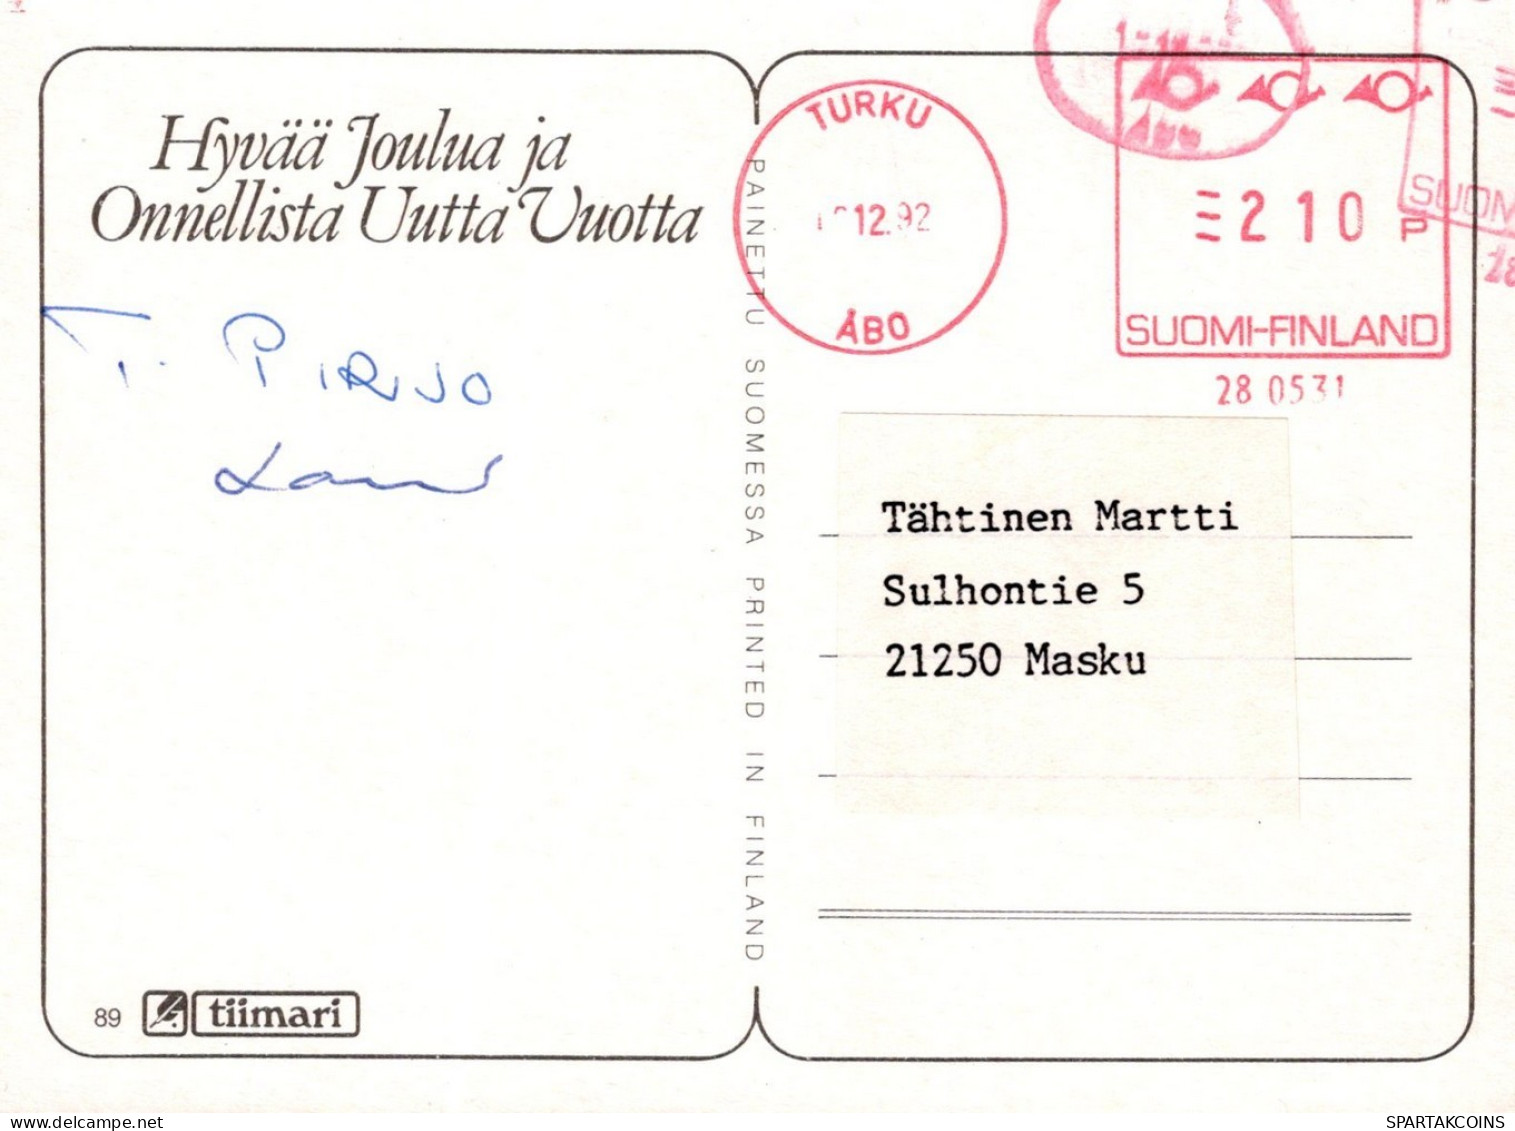 PÈRE NOËL NOËL Fêtes Voeux Vintage Carte Postale CPSMPF #PAJ443.FR - Santa Claus